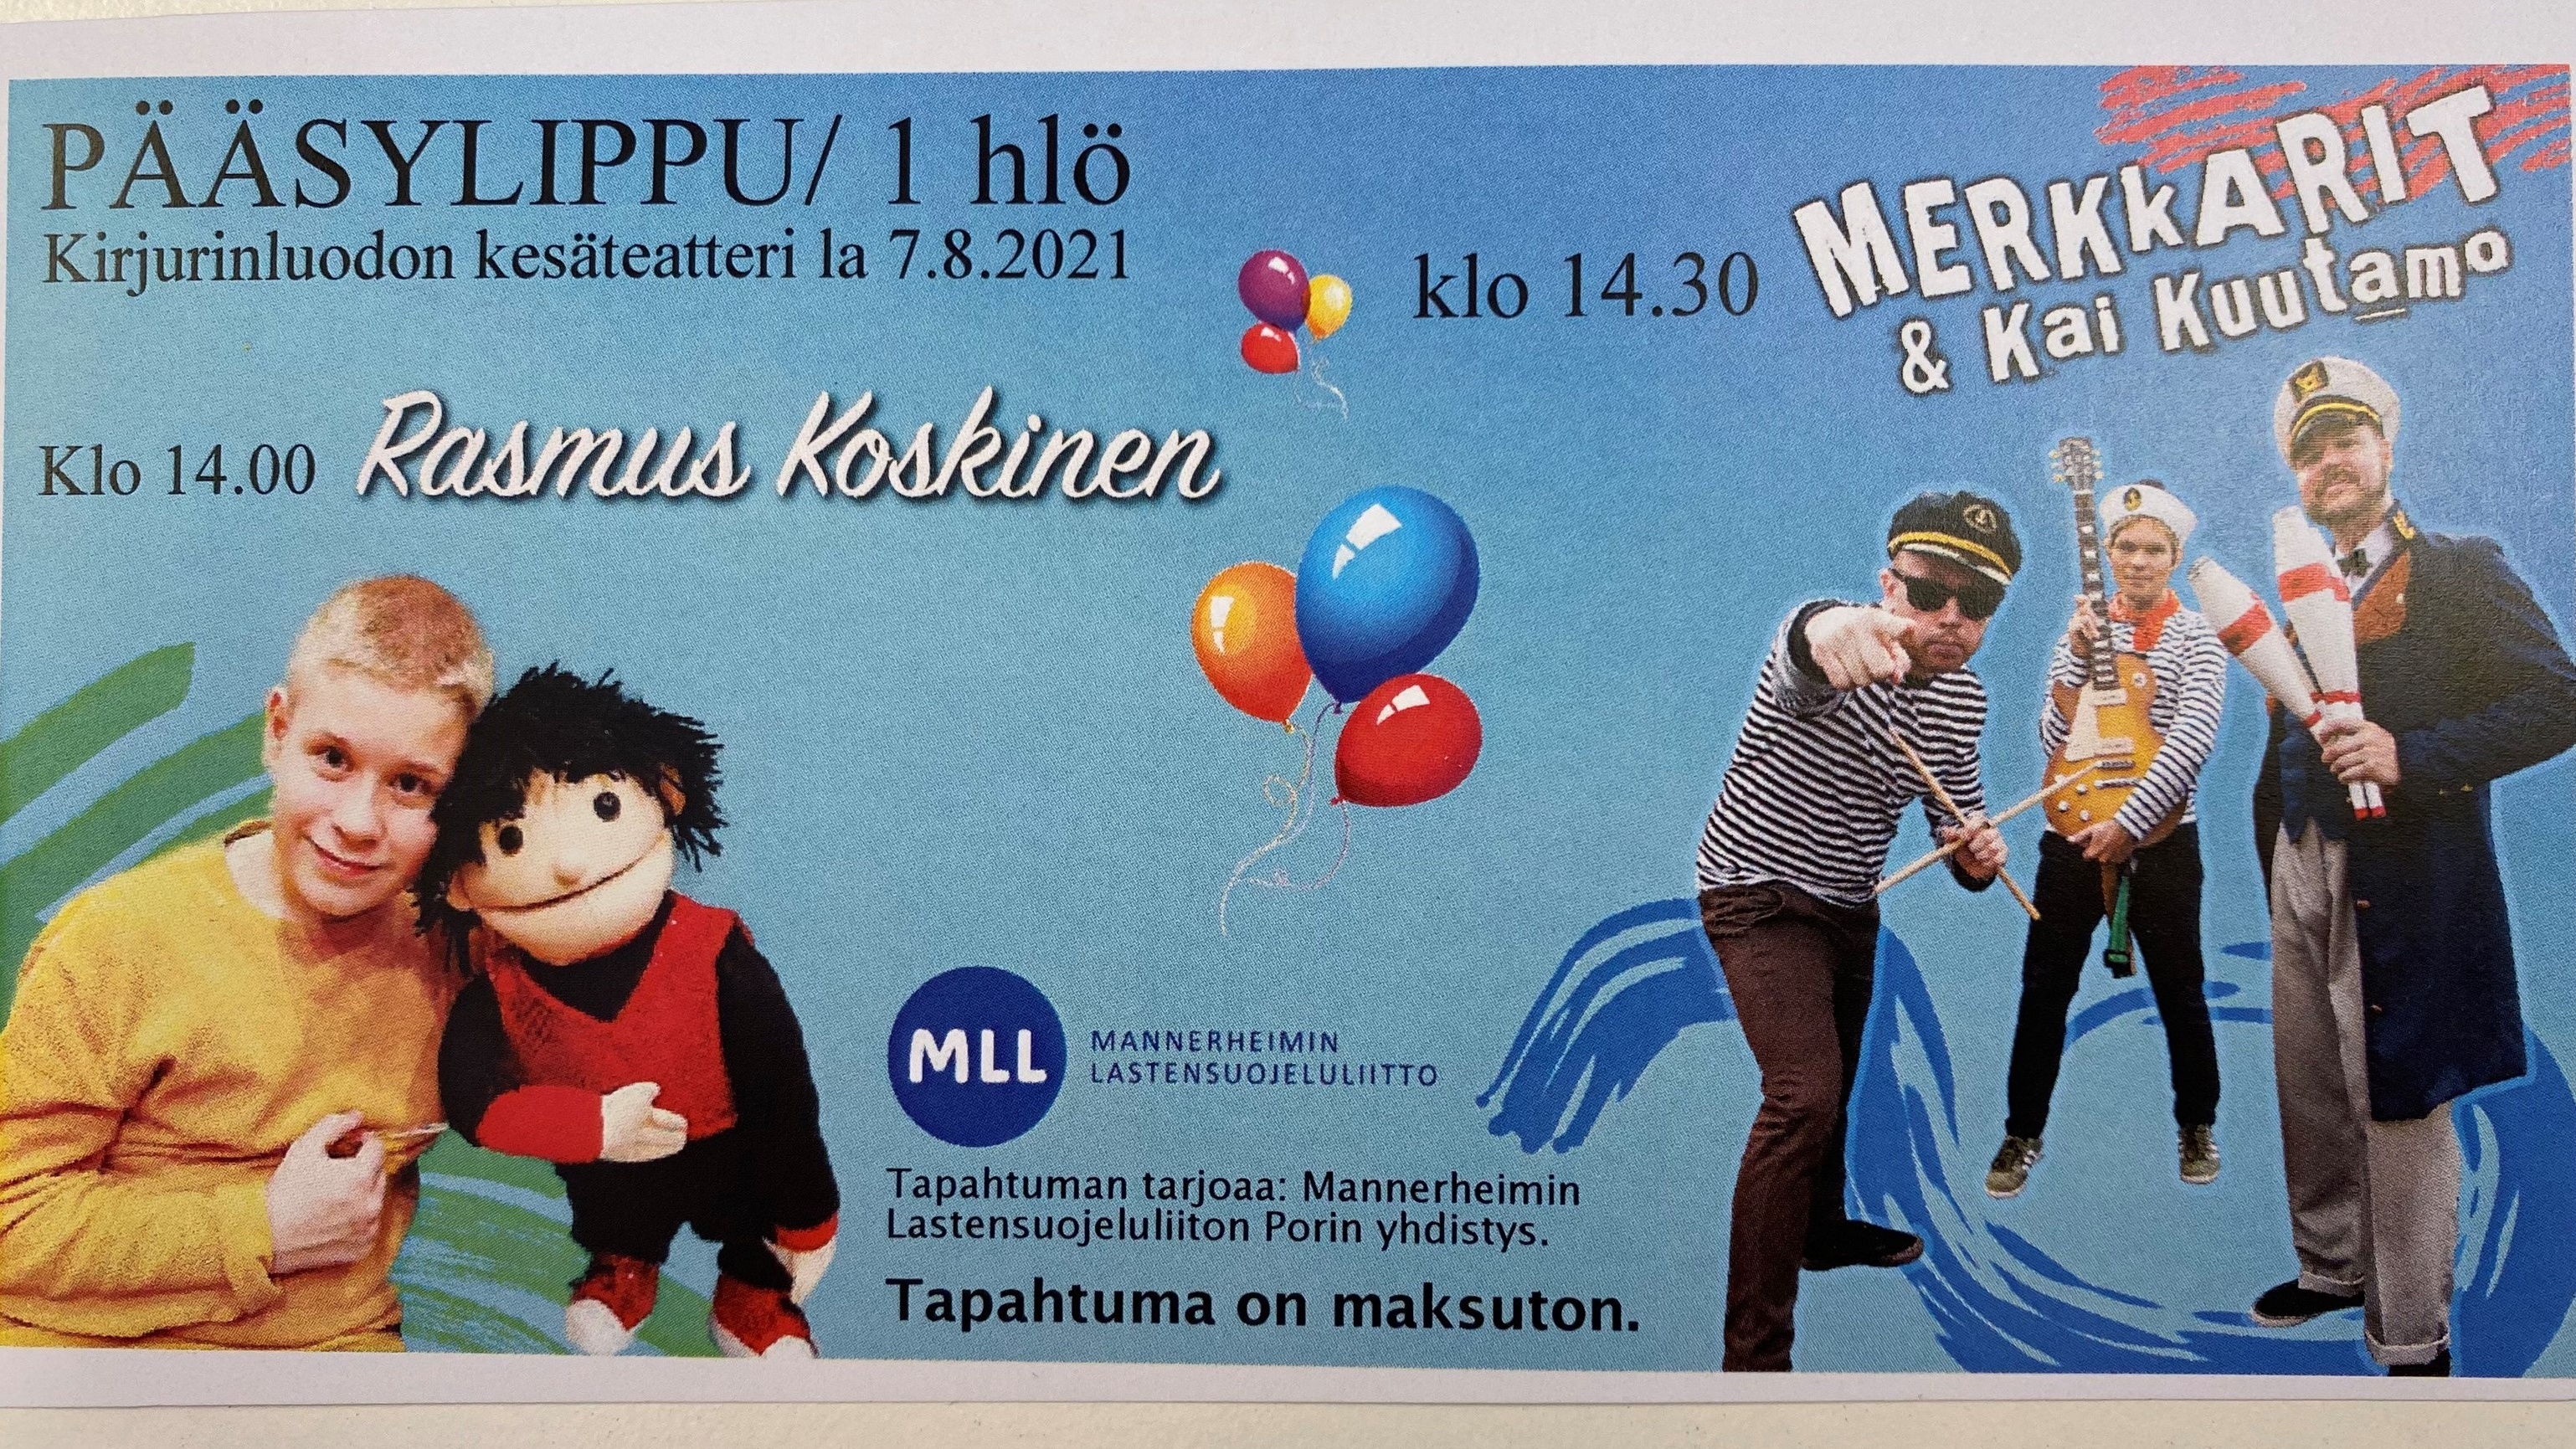 Merkkarit & Kai Kuutamo ja Rasmus Koskinen